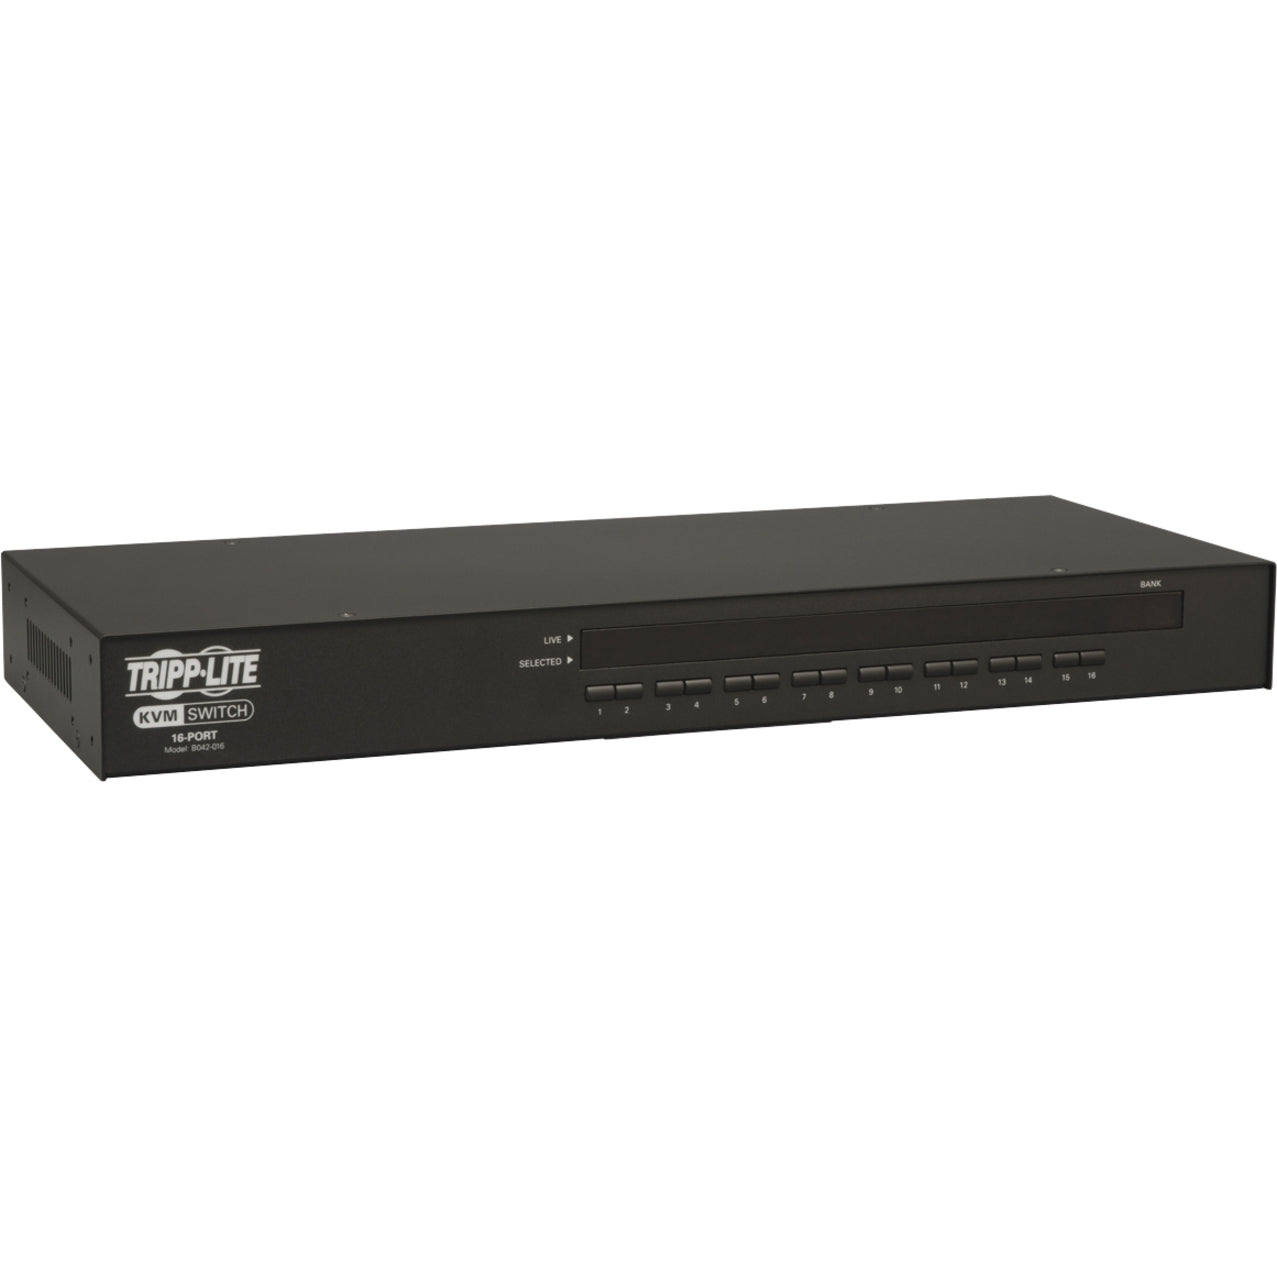 Tripp Lite B042-016 KVM Switch 16-Port USB/PS2 1U RM w/ On-Screen Display